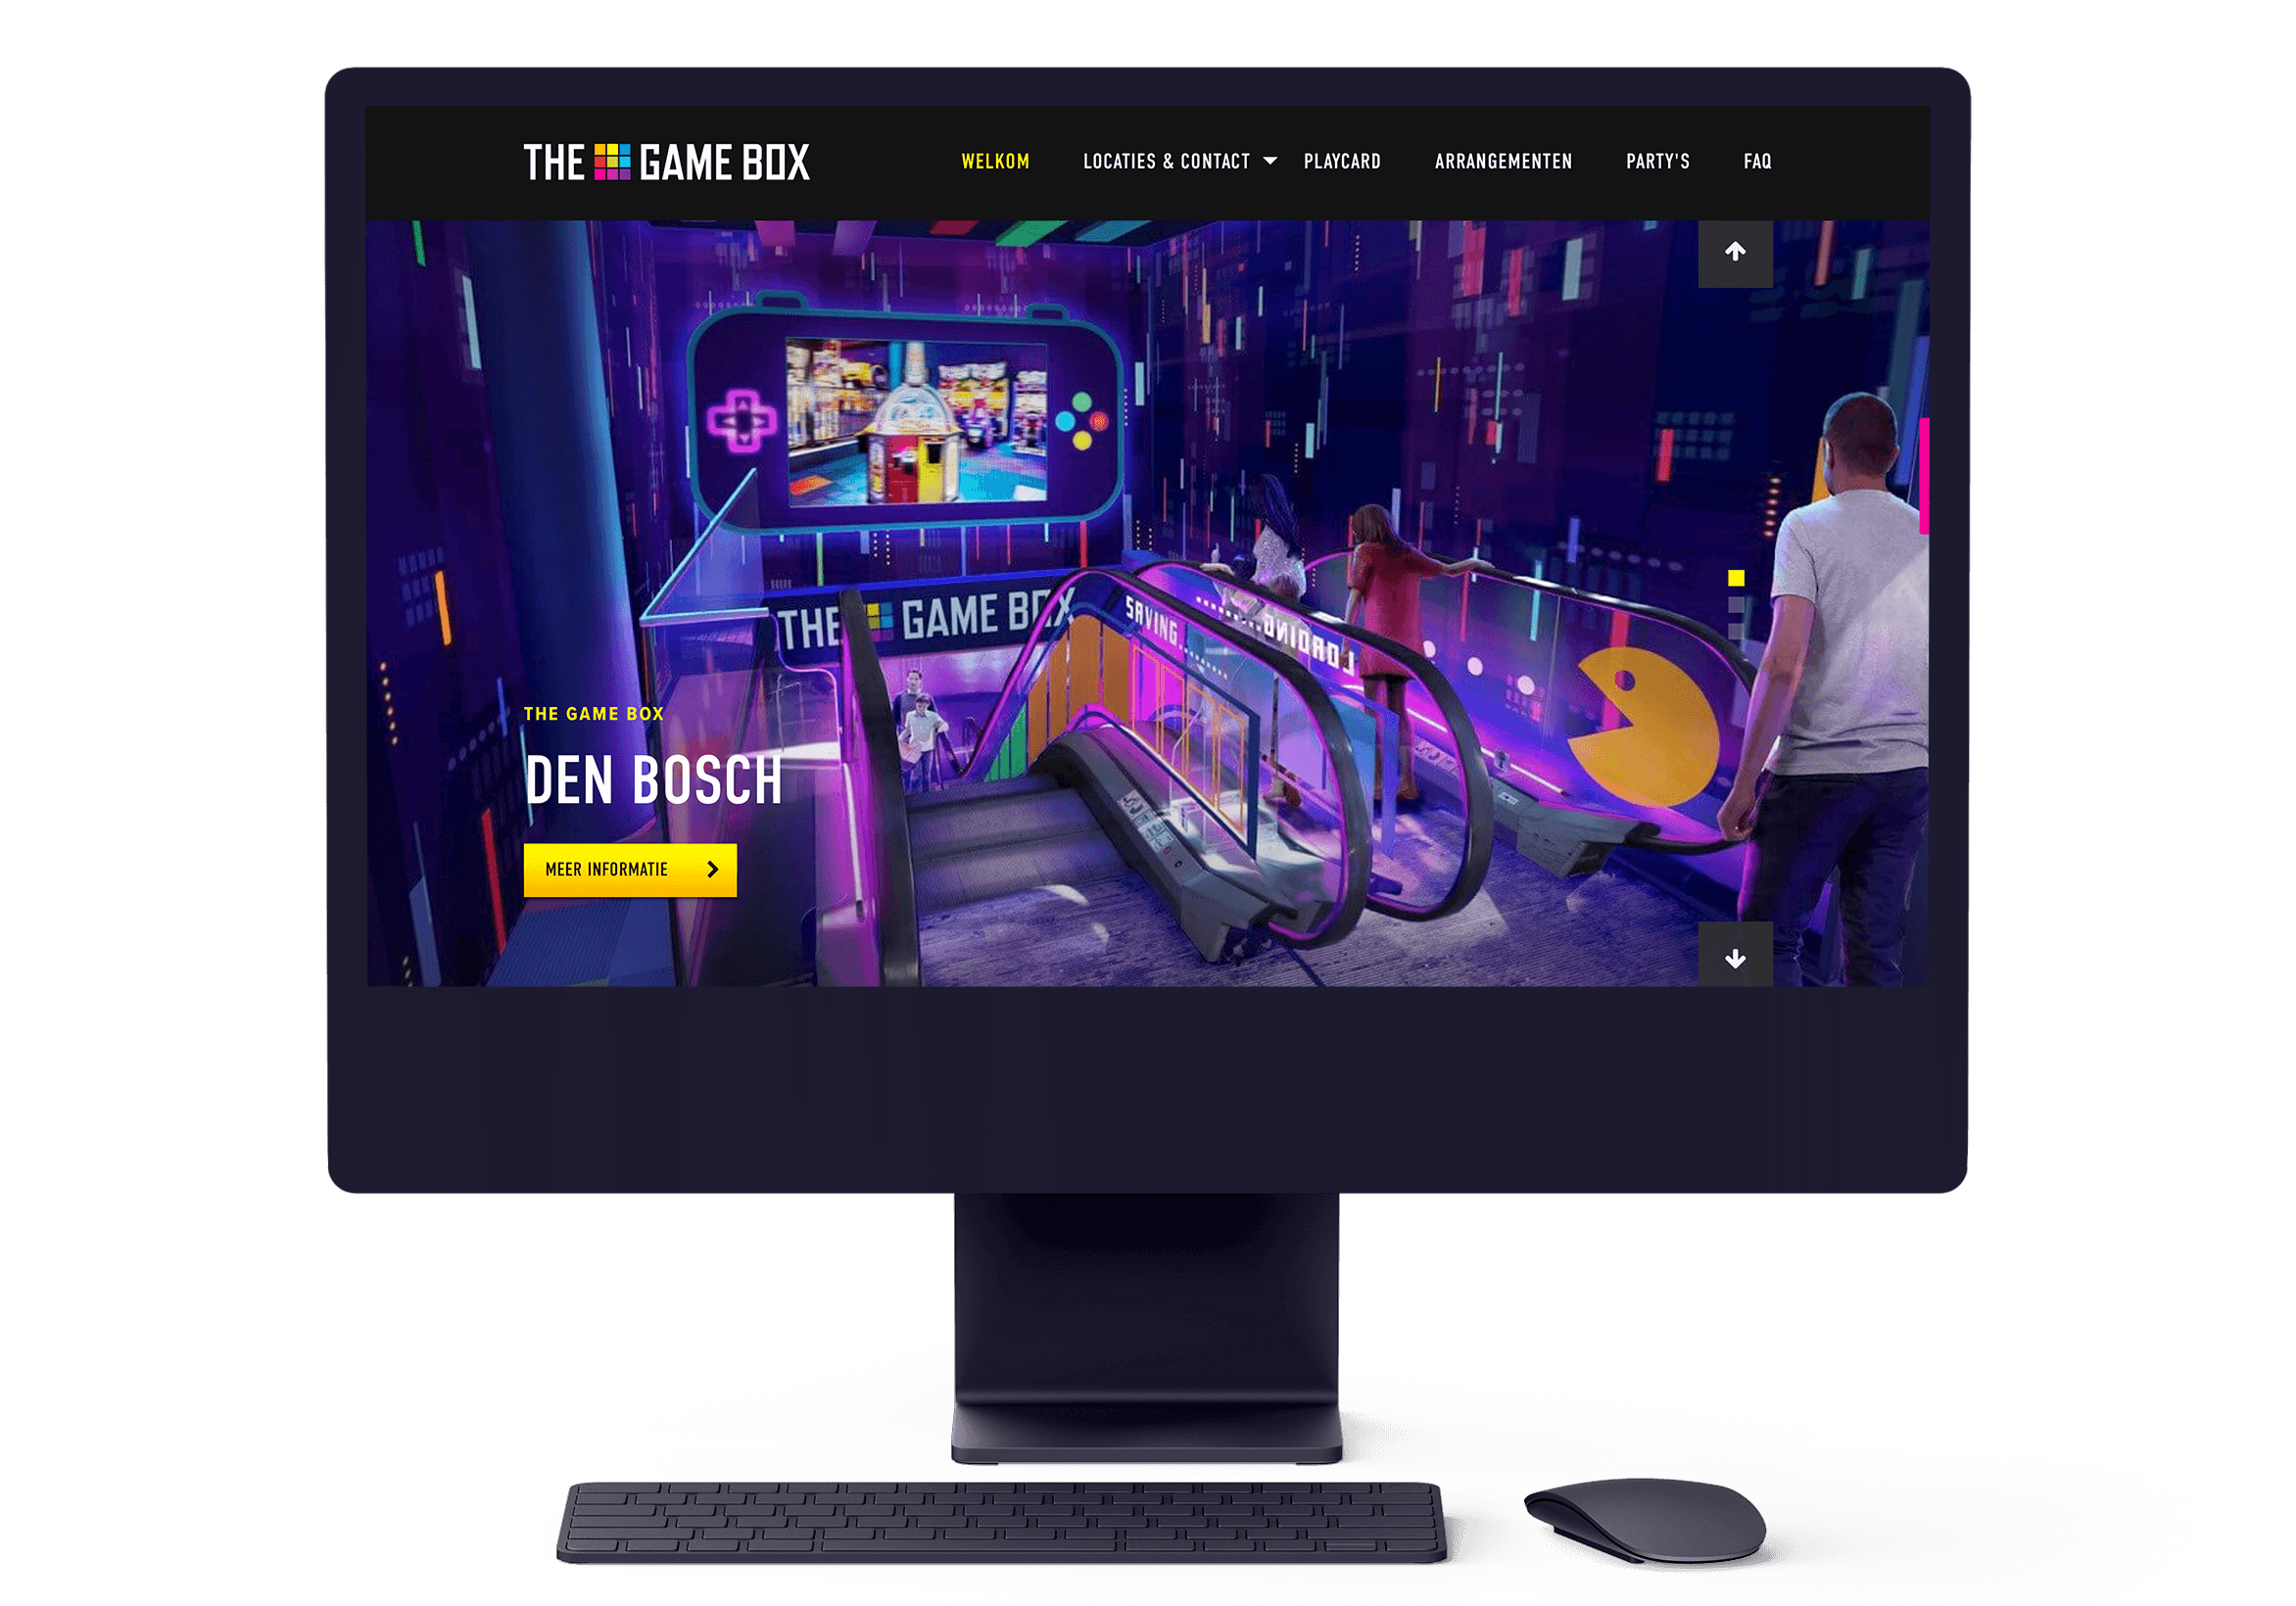 Een iMac image met het website van The Game Box.